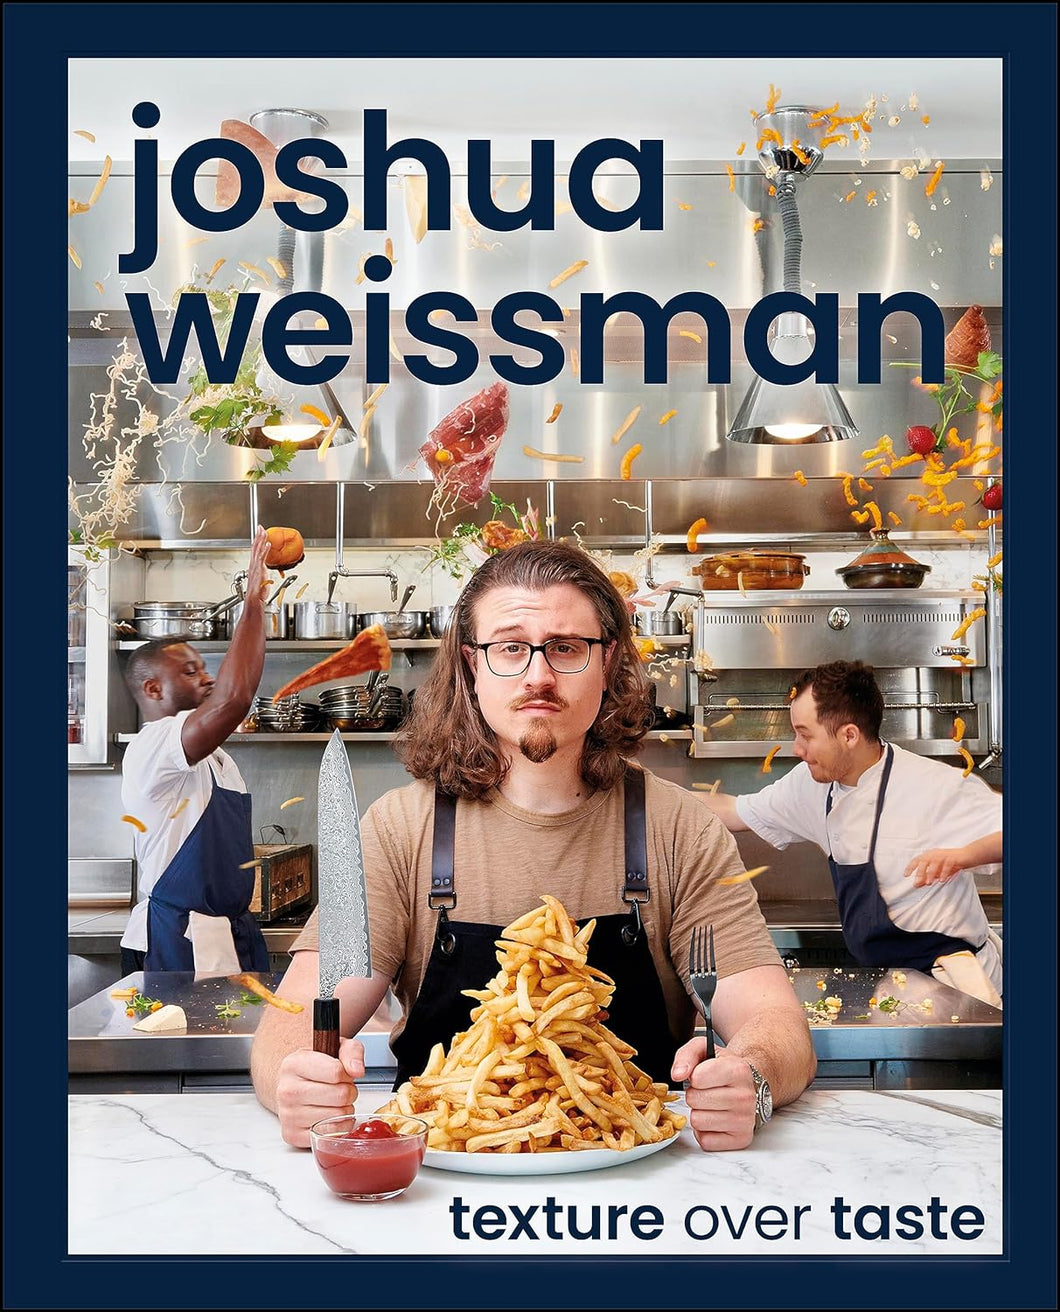 Joshua Weissman: Texture Over Taste by Joshua Weissman